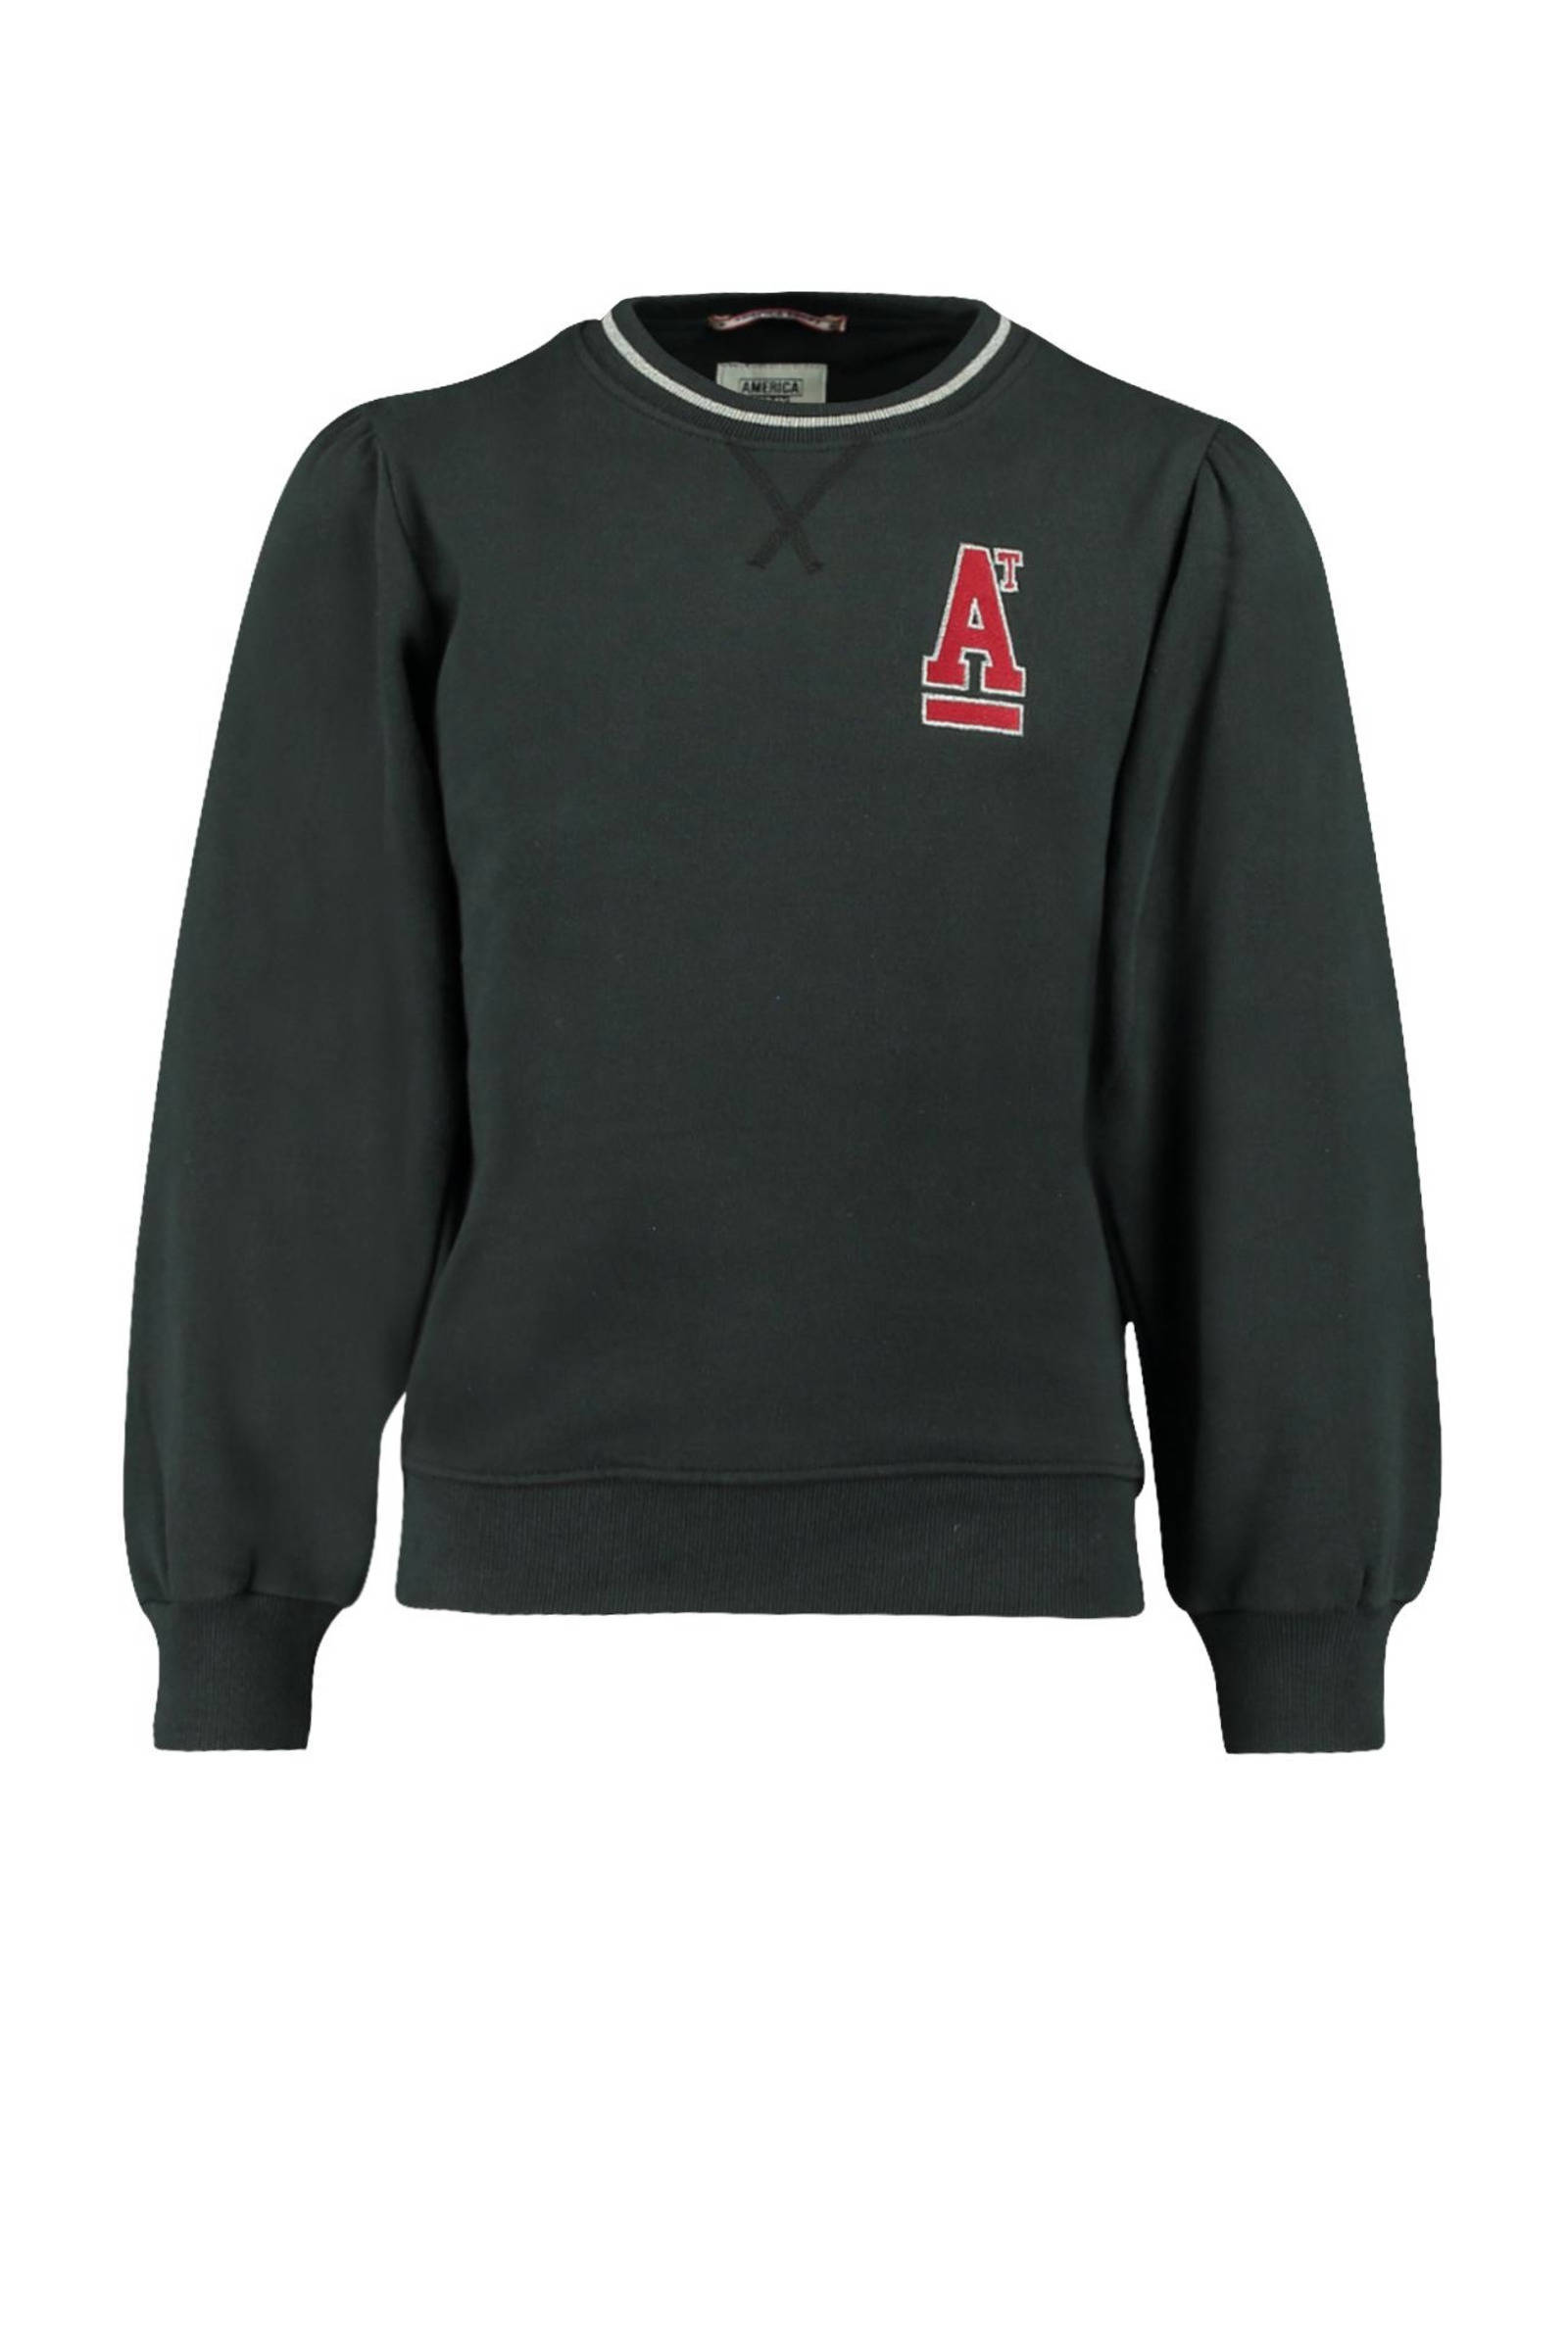 America Today Junior sweater Selina JR met logo zwart